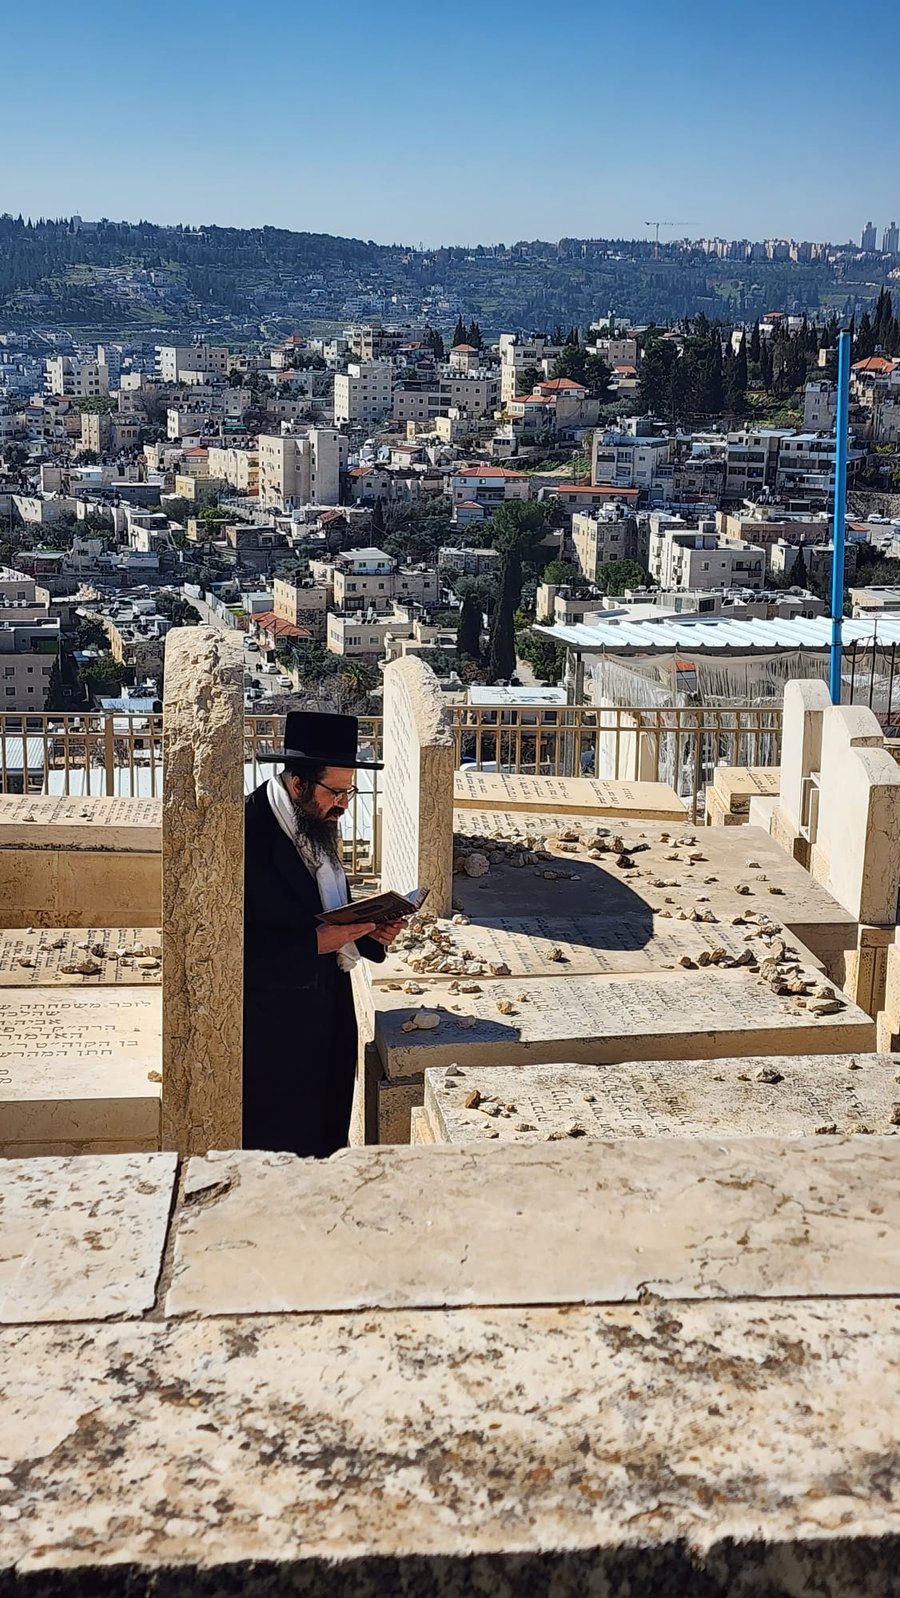 האדמו"ר מזוועהיל ארה"ב בביקור בישראל | תיעוד